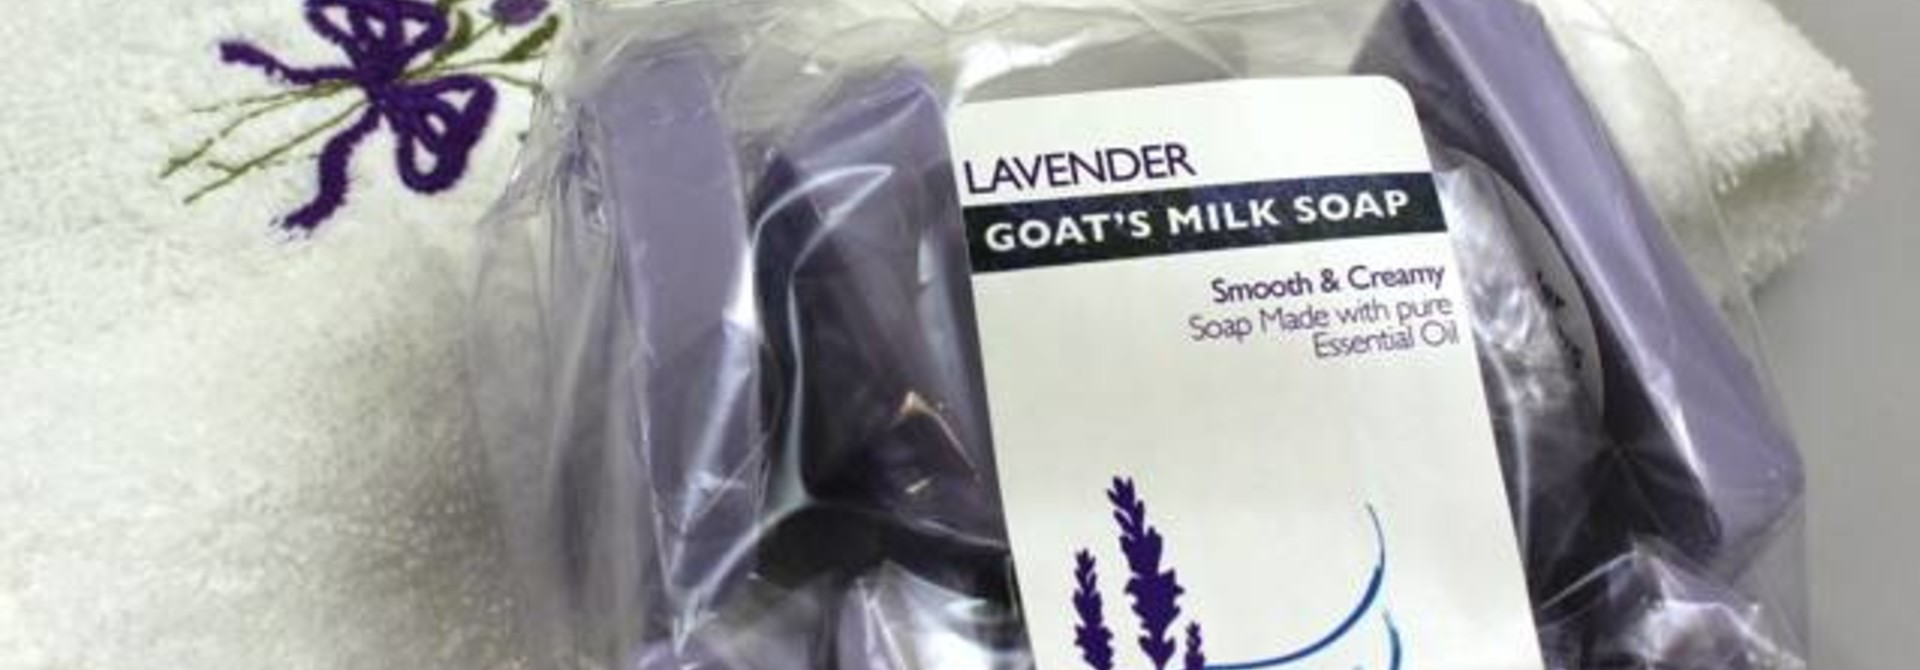 Goat's Milk Soap 1 lb. Guest soaps Purple